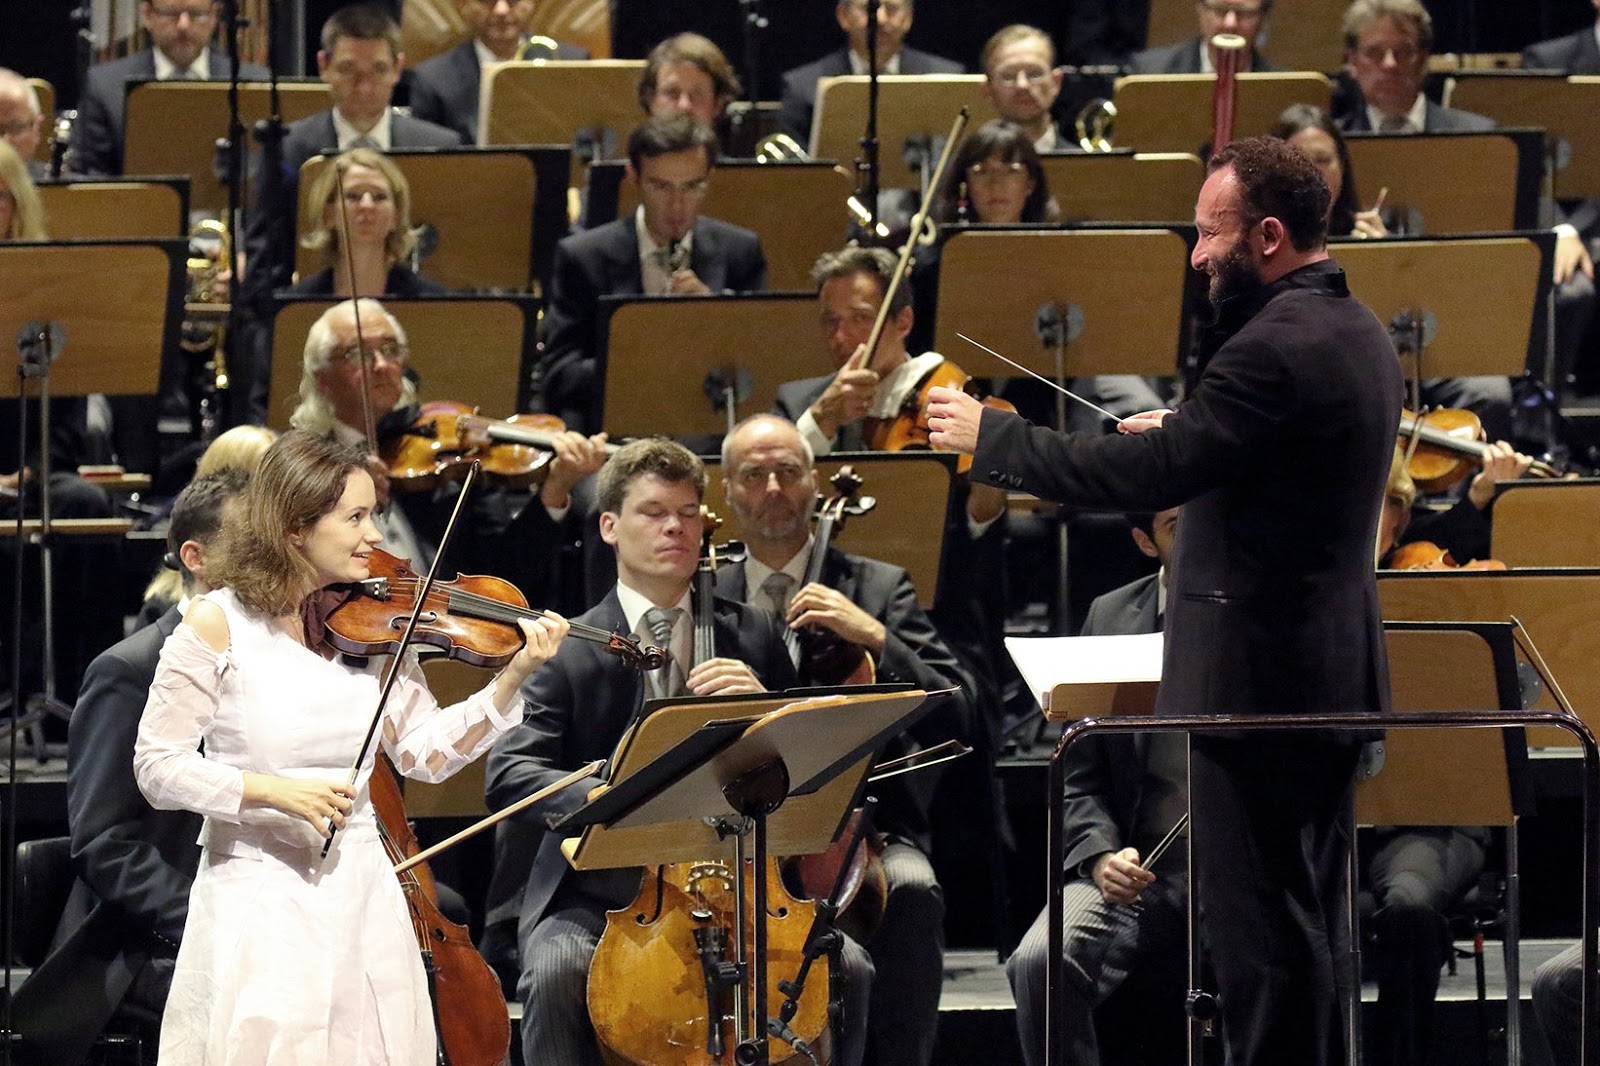 Concert d'Académie: Kirill Petrenko et Patricia Kopatchinskaja triomphent dans le Concerto pour violon de Schönberg. Crédit photographique Wilfried Hösl